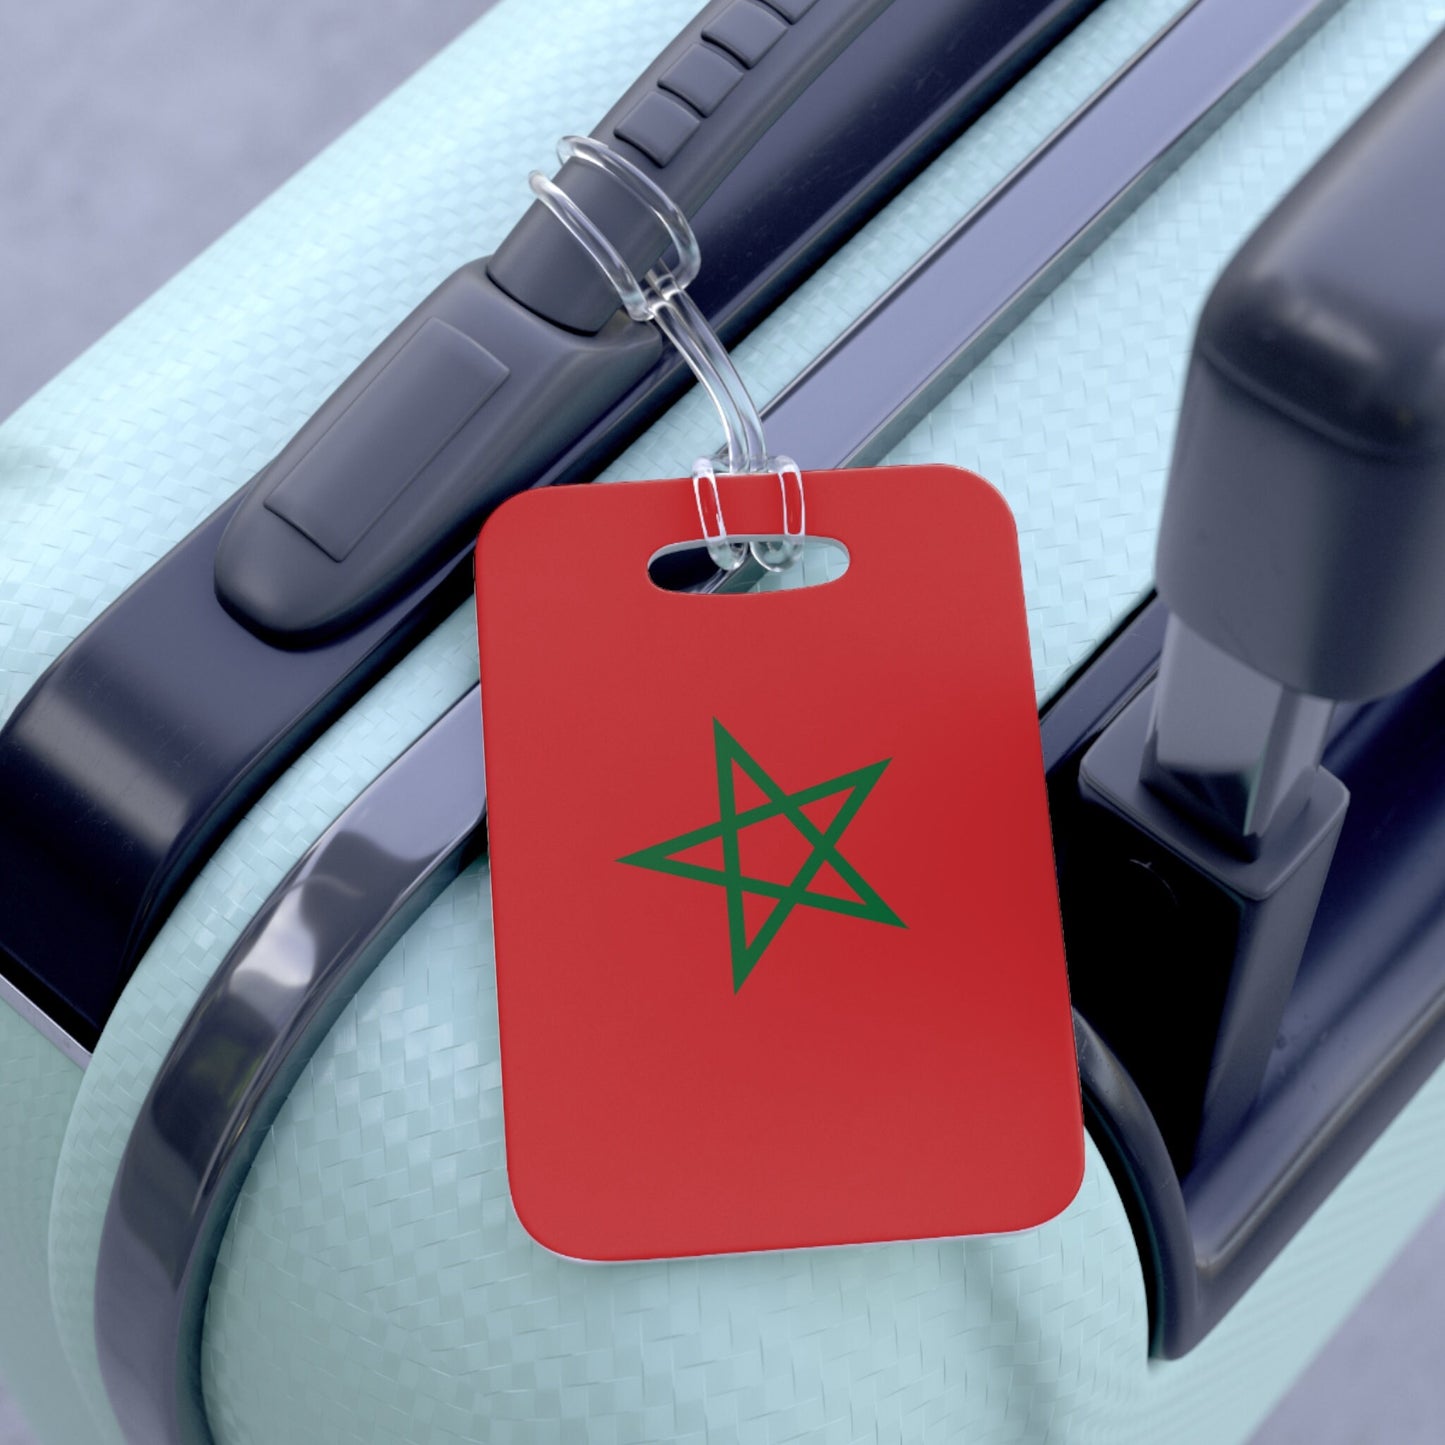 Morocco Flag Luggage Bag Tag